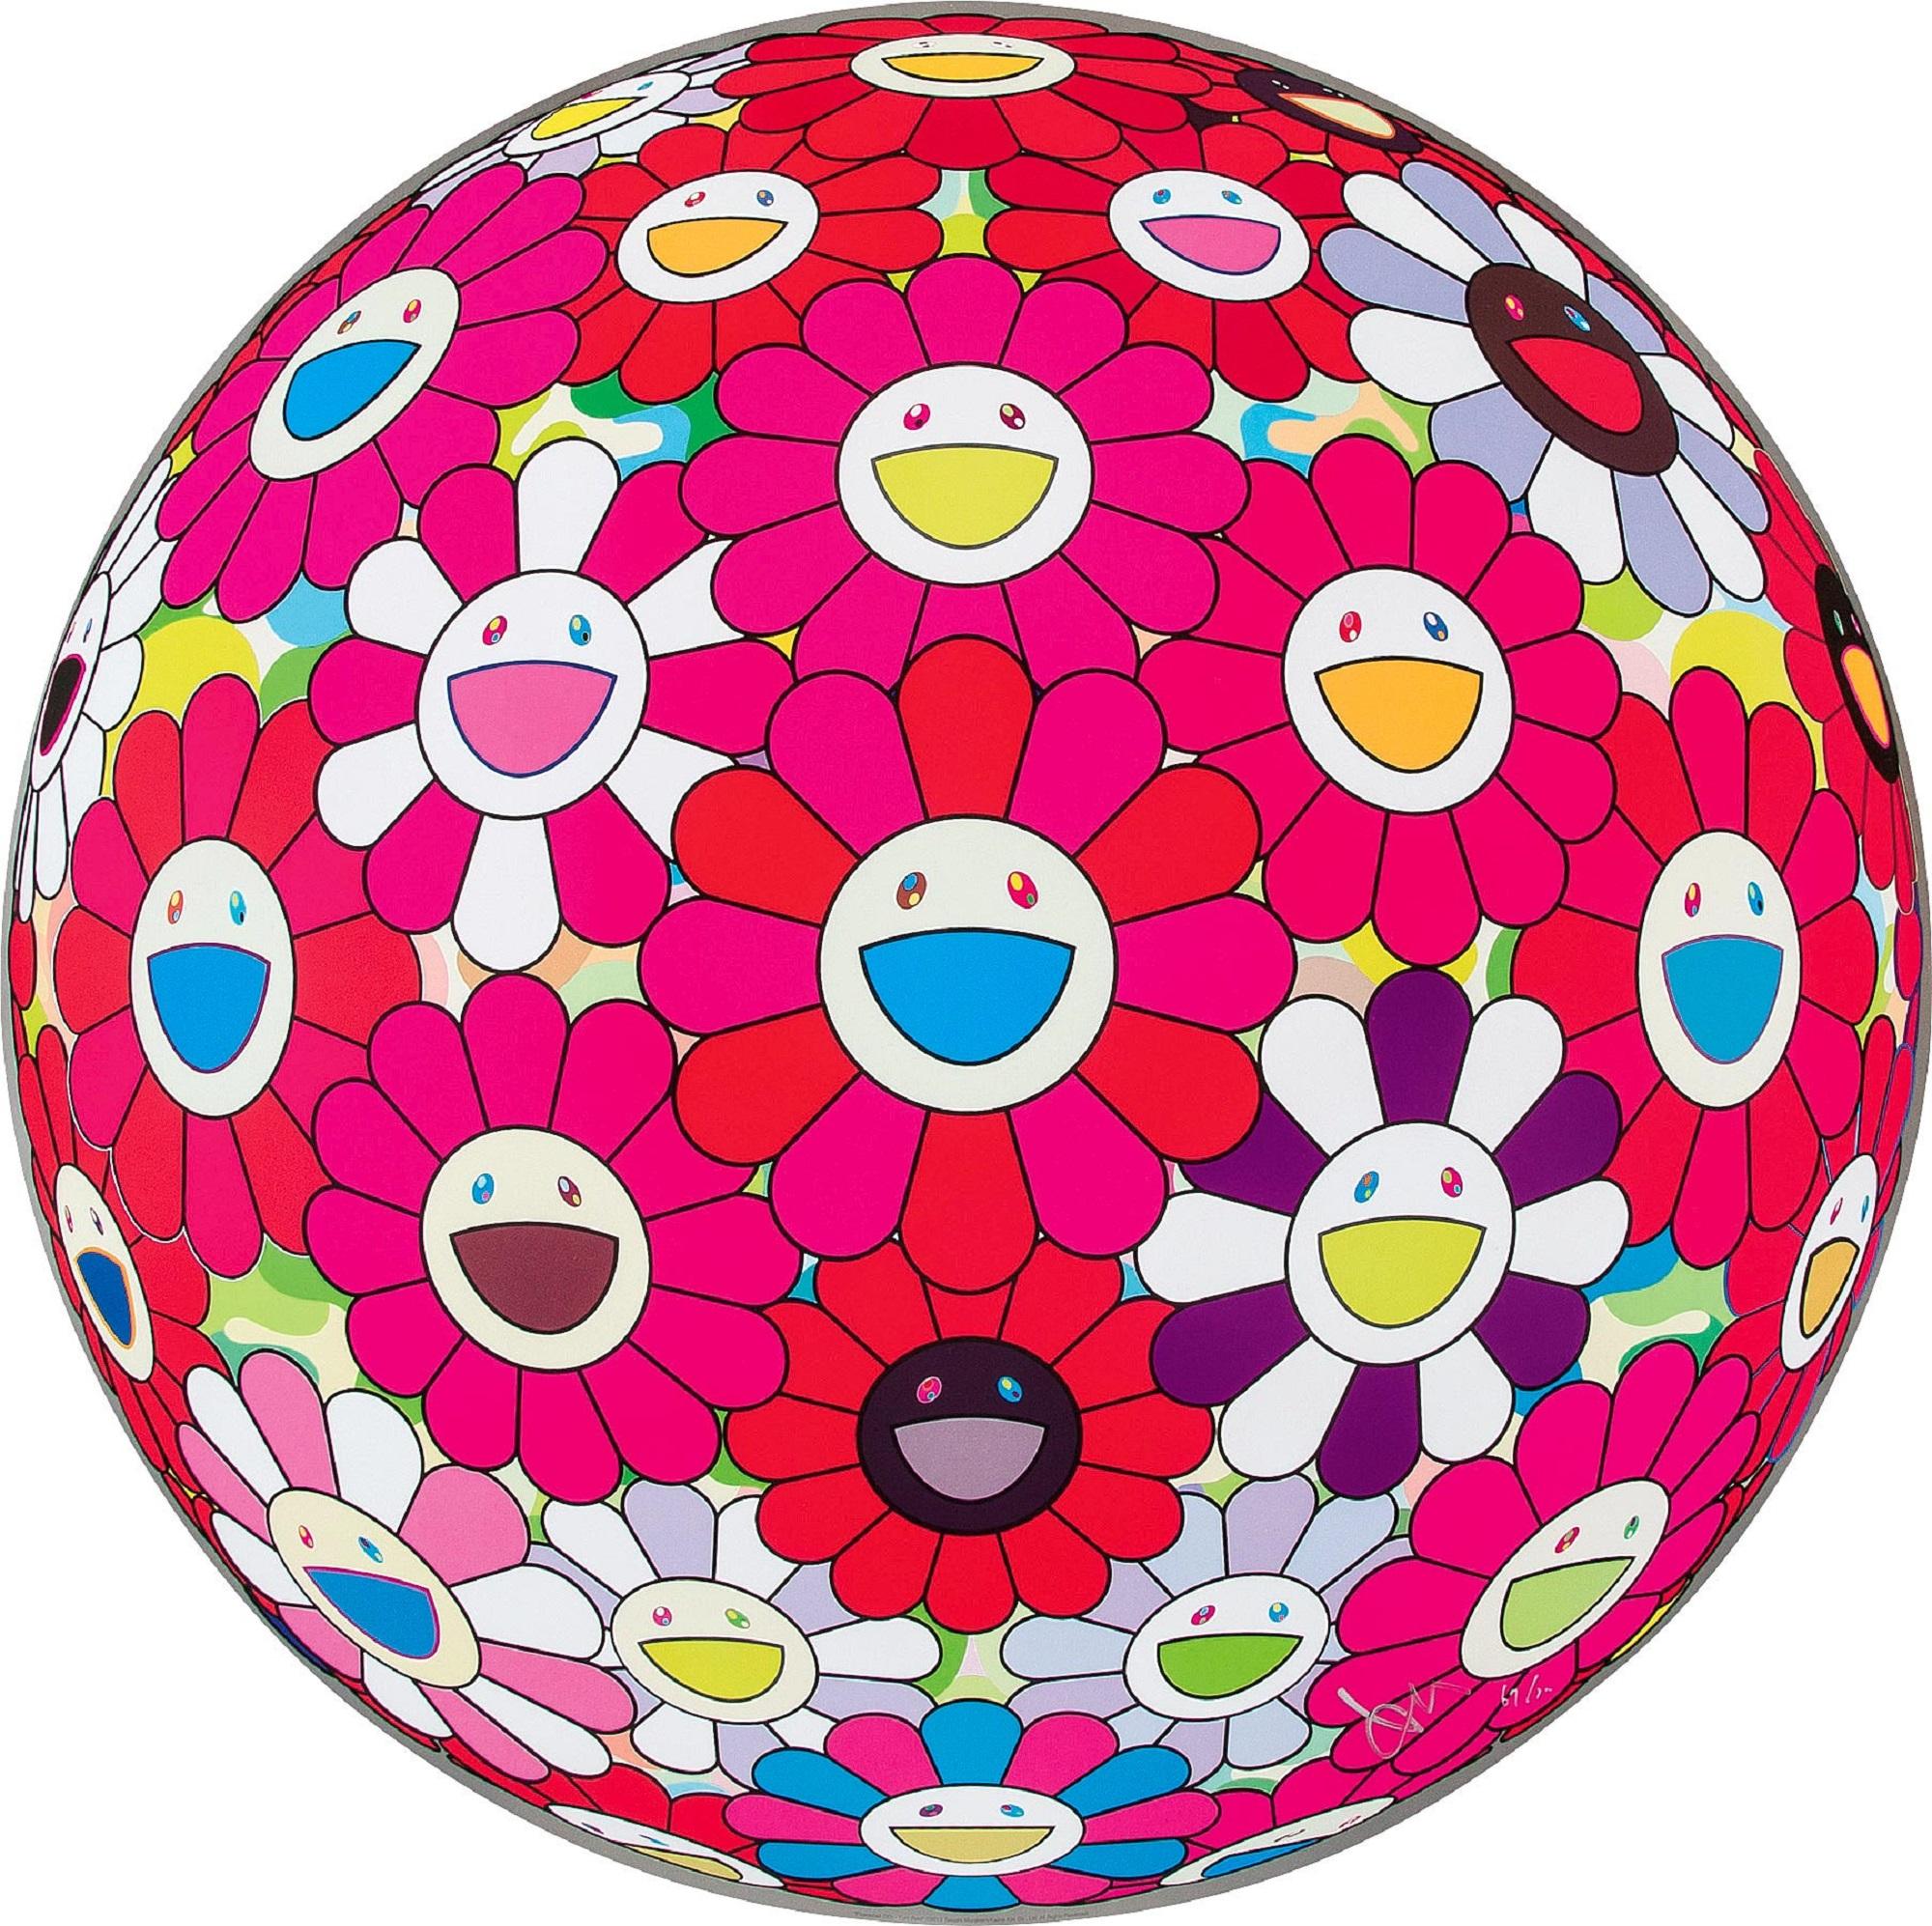 Flowerball (3D) - Werde rot! Limitierte Auflage (Druck) Murakami signiert und nummeriert